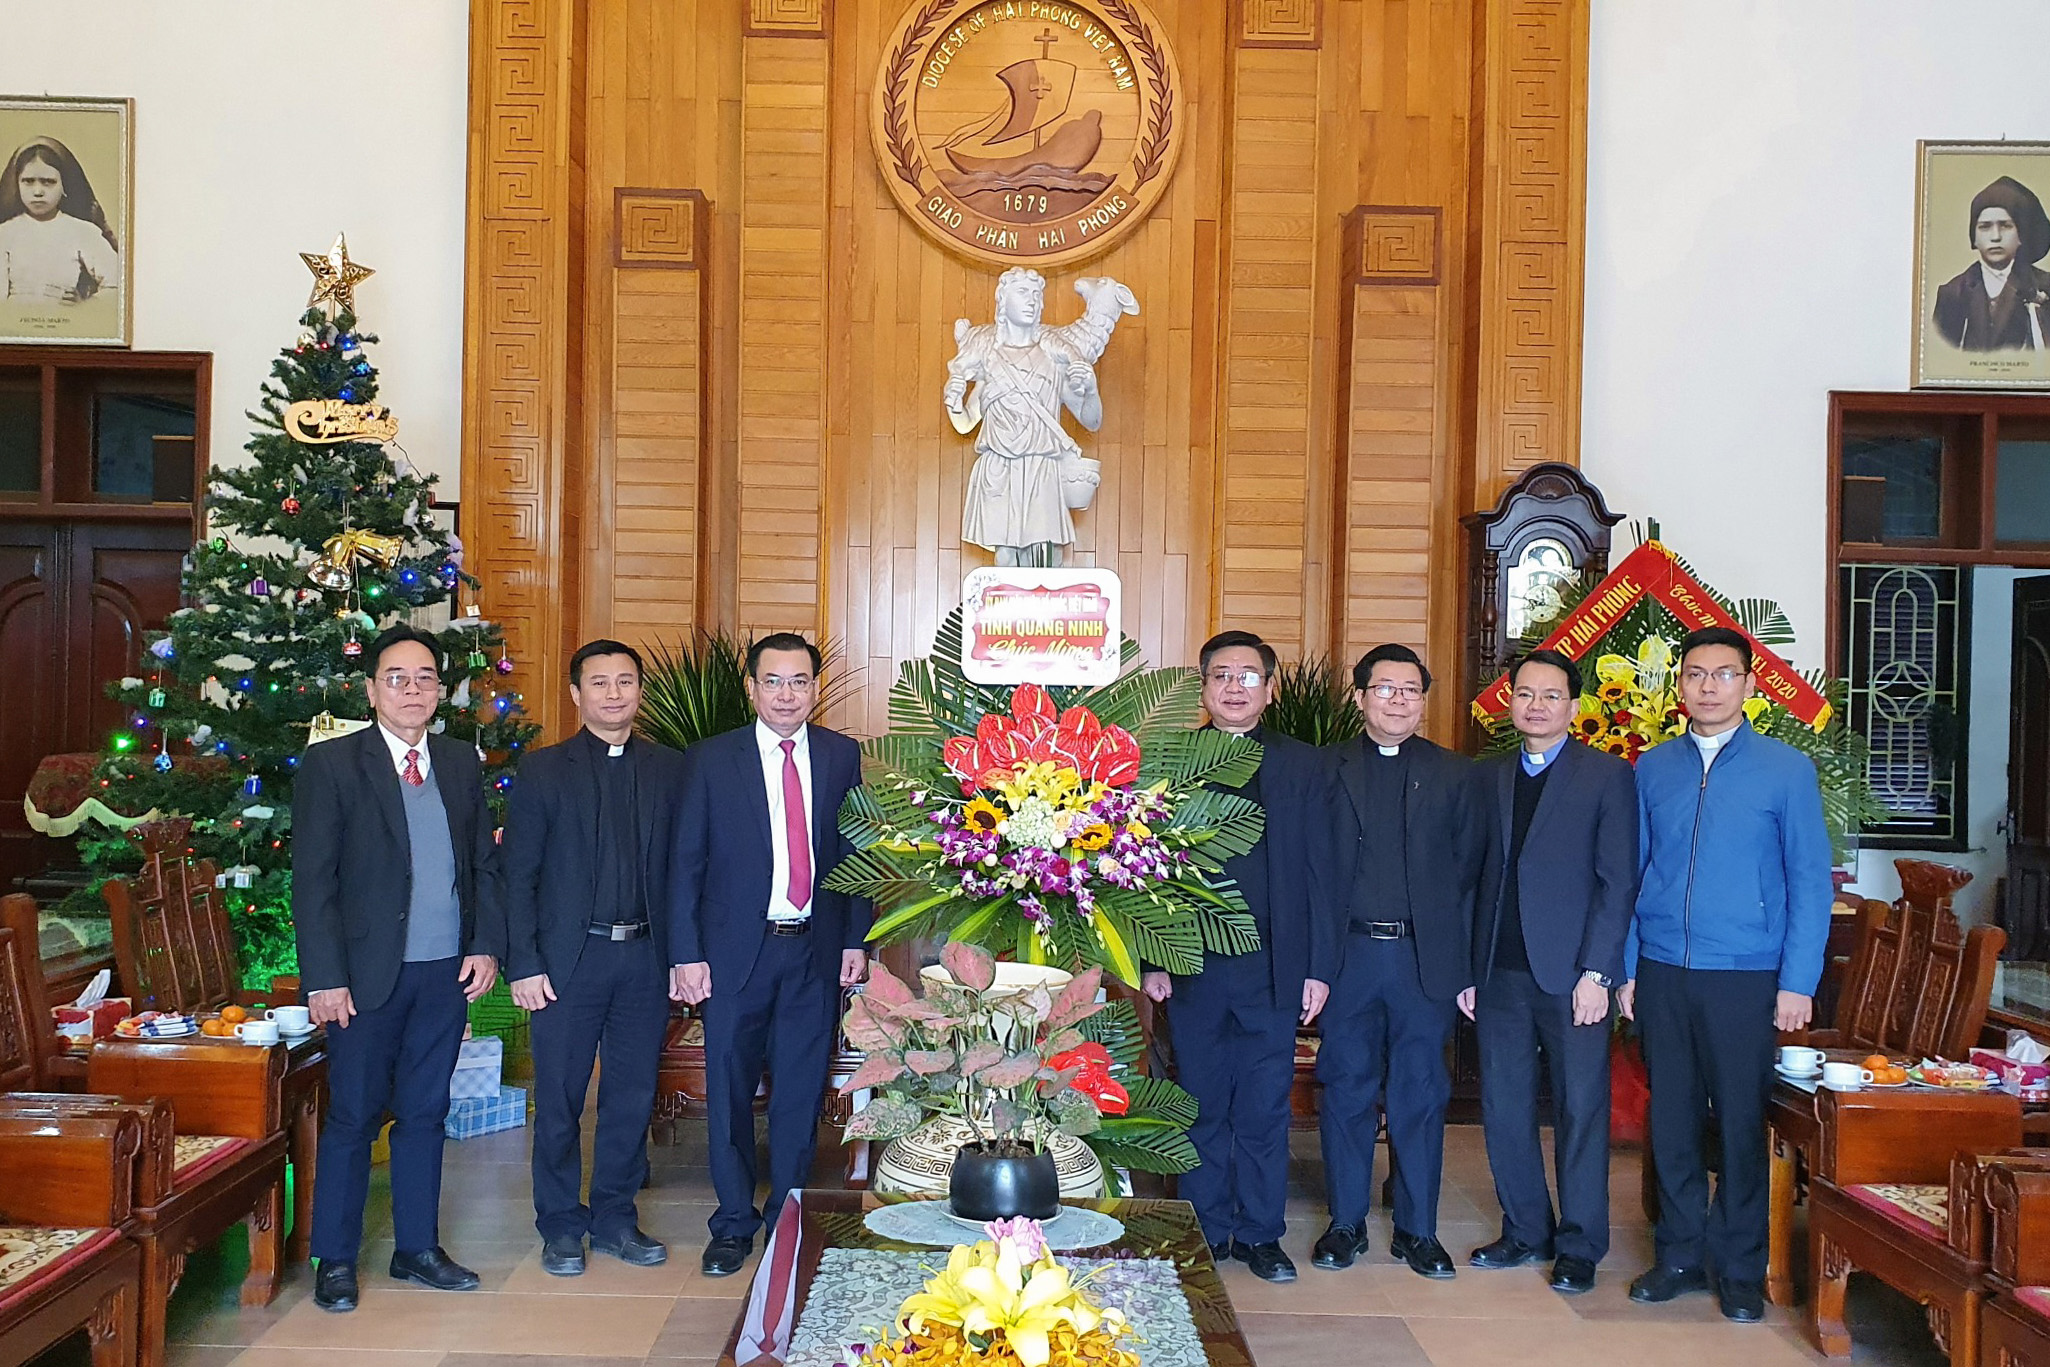 Đồng chí Hoàng Đức Hạnh, Phó Chủ tịch Ủy ban MTTQ tỉnh, tặng hoa chúc mừng Tòa Giám mục Hải Phòng.